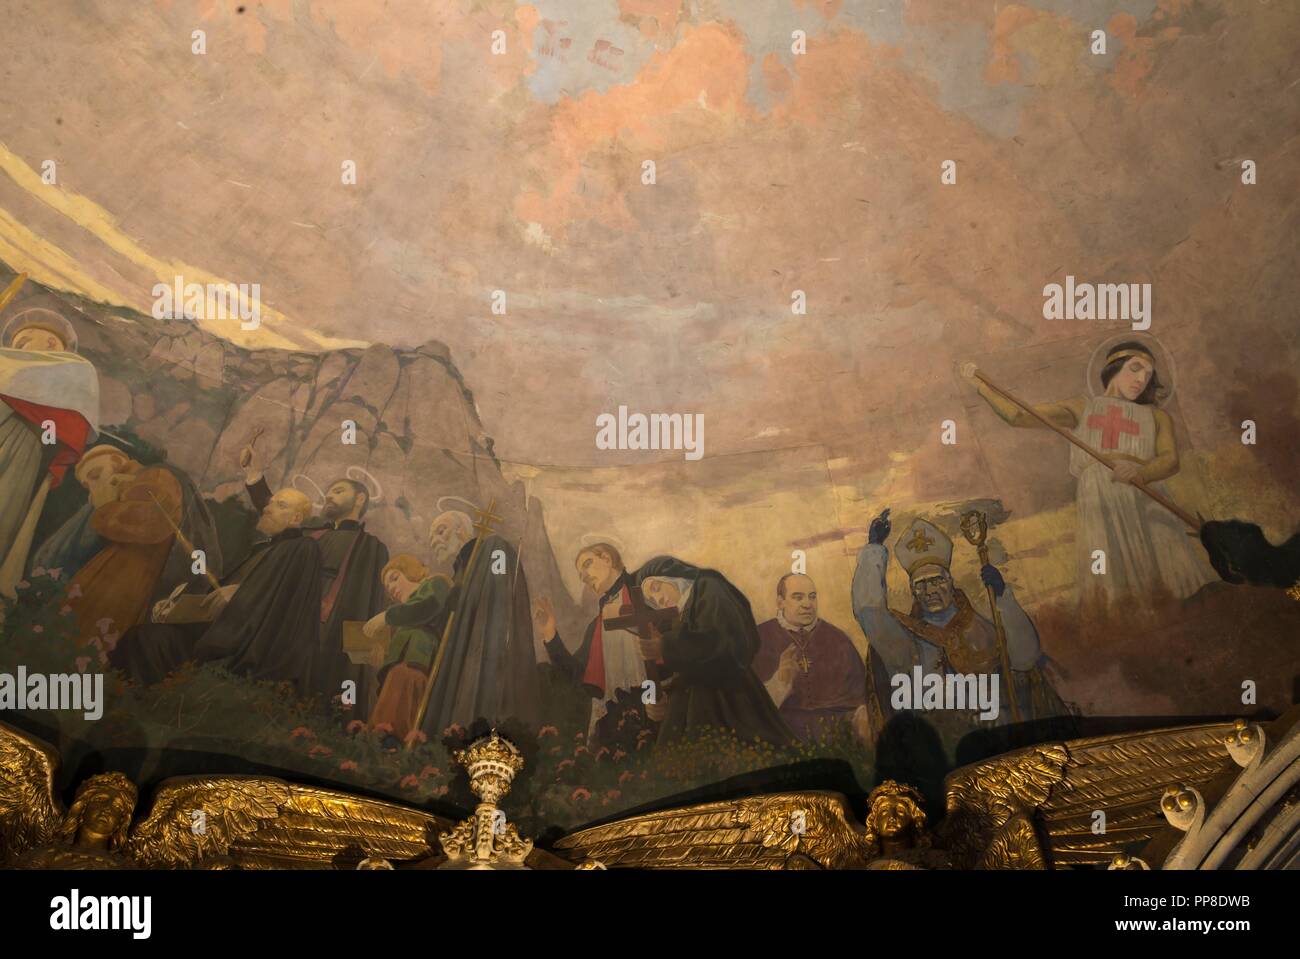 Detalle del Apoteosis de la Virgen, 1896-1898. Pintura mural de la cúpula del cambril de la Virgen. Monasterio de Montserrat. Cataluña. Autor: Llimona, Joan. Foto de stock